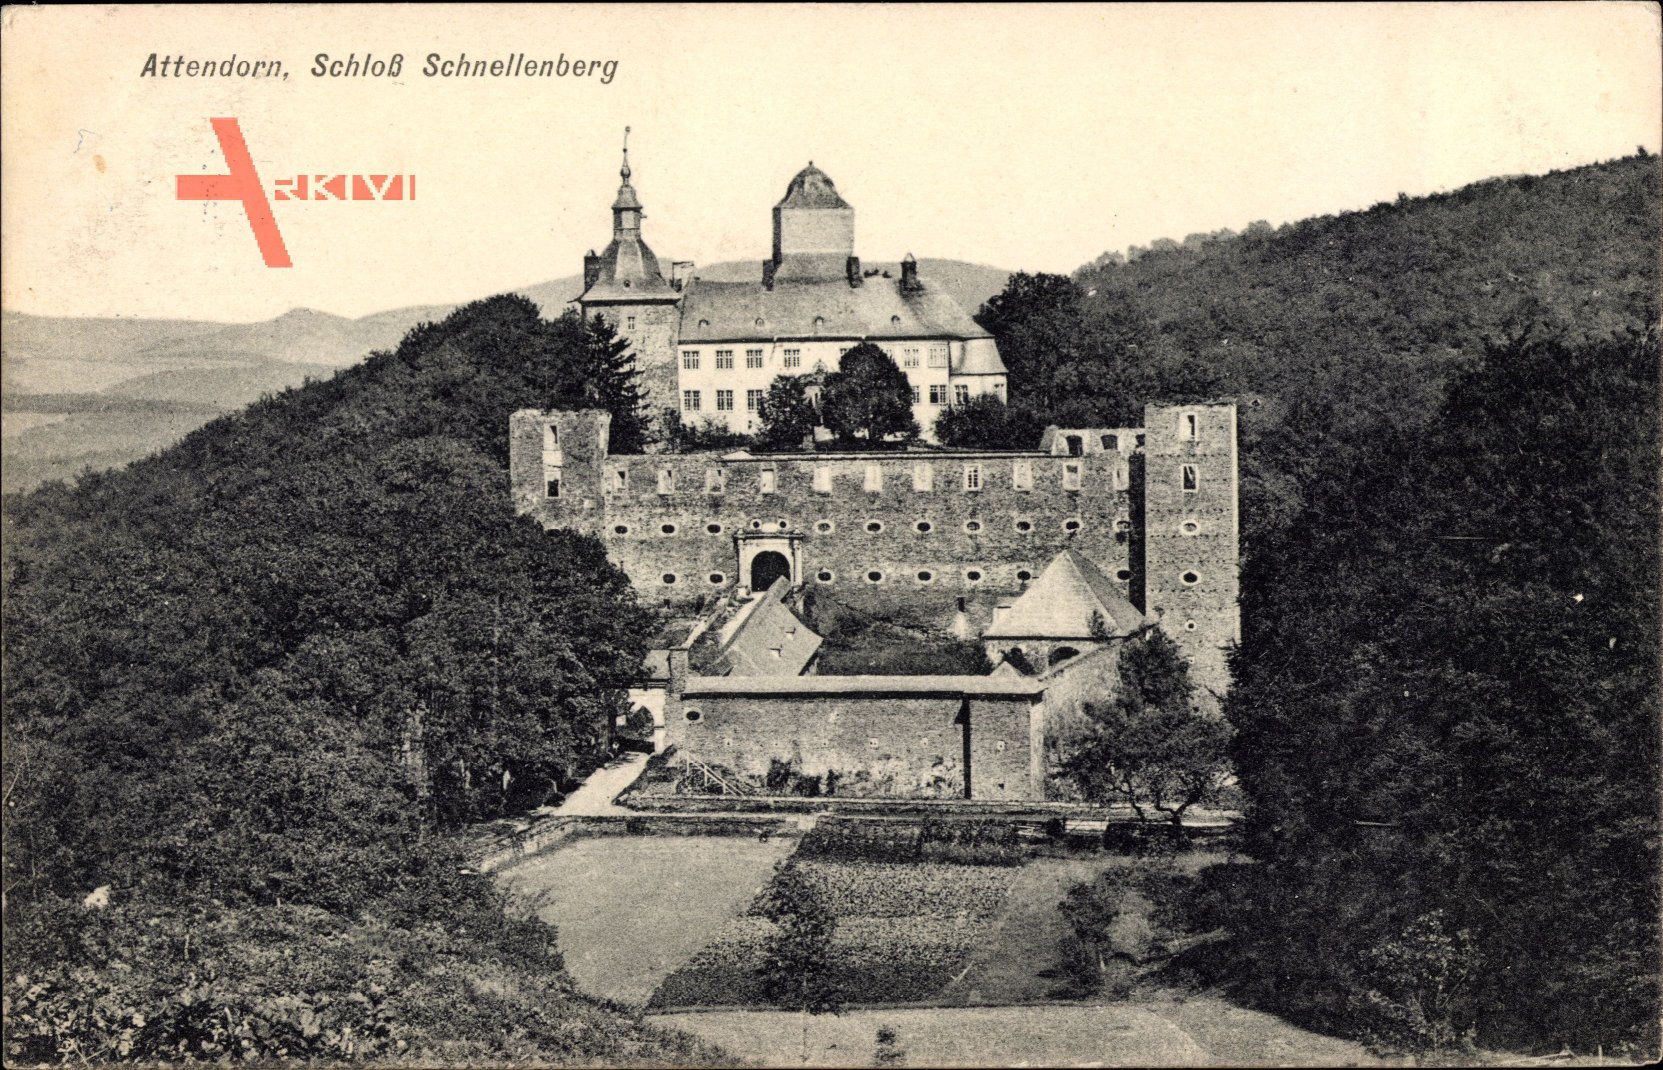 Attendorn, Blick auf das Schloss Schnellenberg, Waldhang, Hügel, Fenster